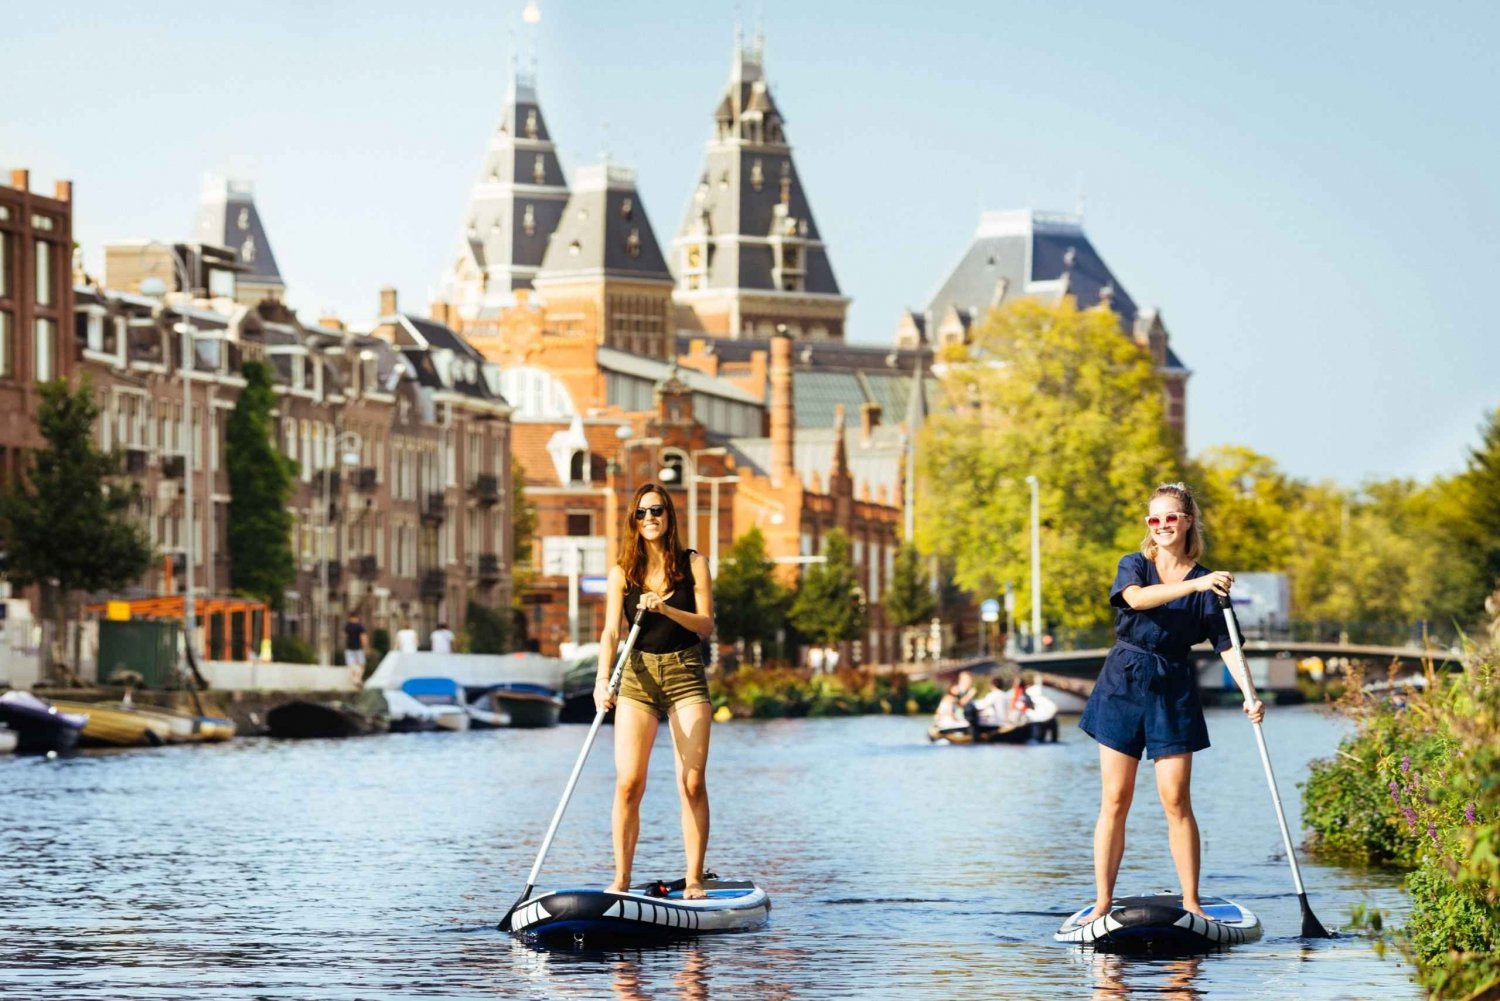 Amsterdam: Lei et SUP-brett og utforsk Amsterdams kanaler